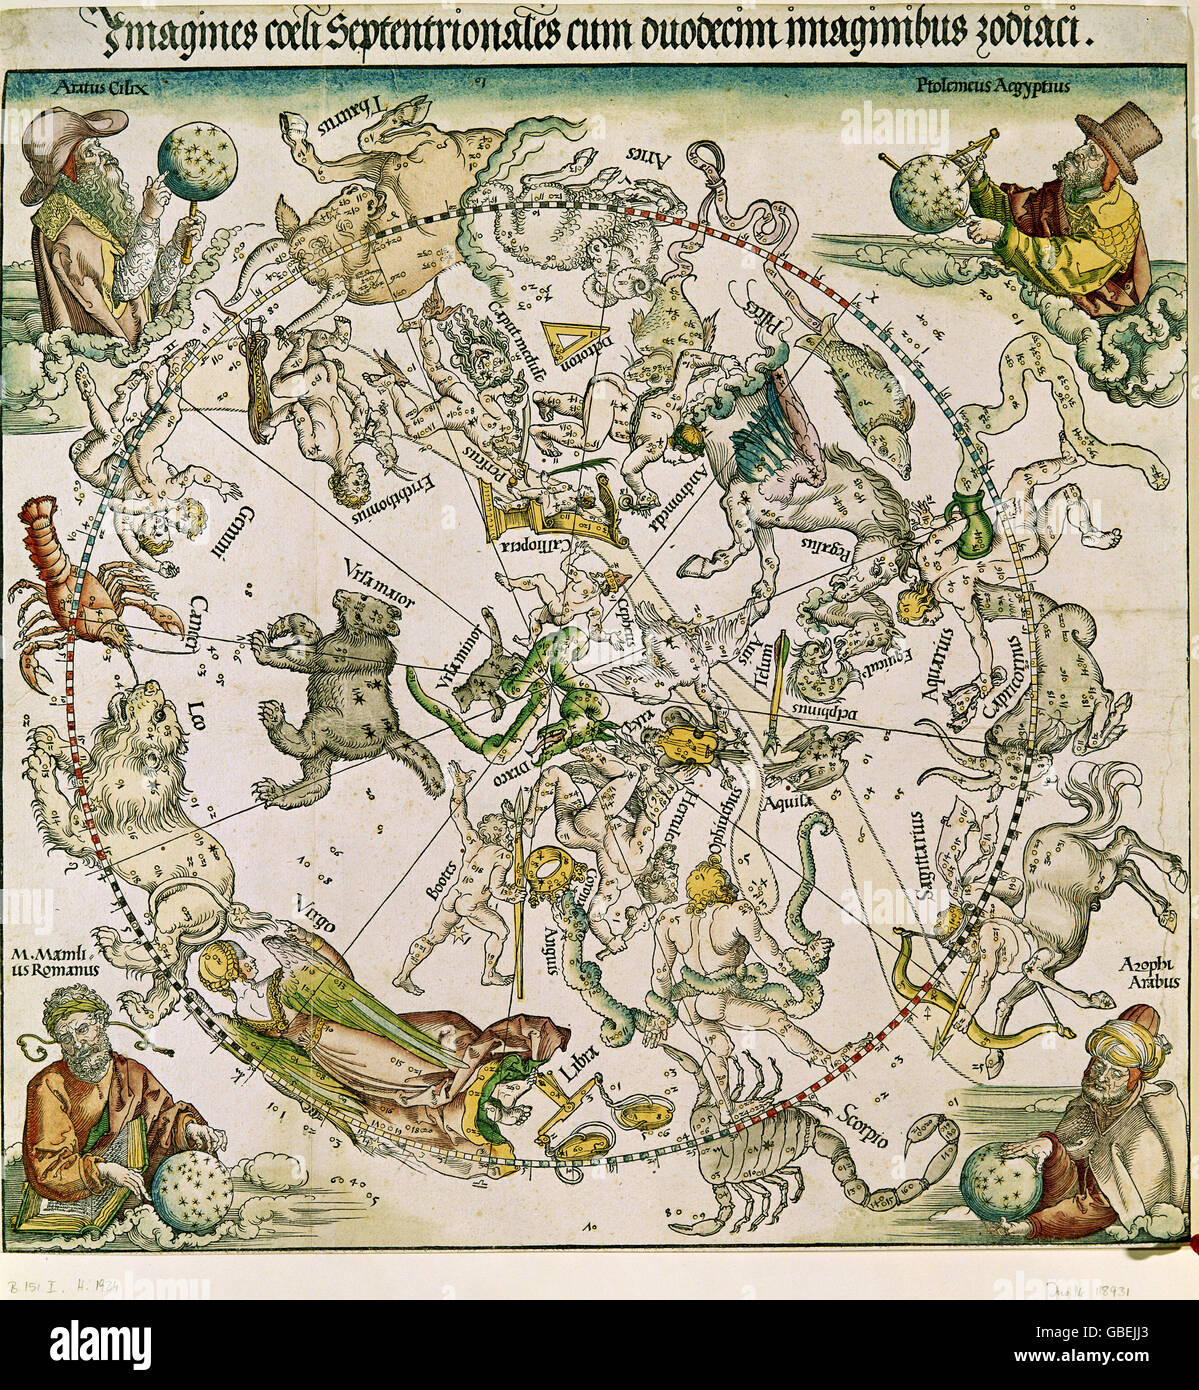 Astronomia, costellazioni, nel nord della sfera celeste con le immagini di astronomi, incisione su rame, colorato da Albrecht Dürer (1471 - 1528), 1515 stato grafico raccolta, Monaco di Baviera, artista del diritto d'autore non deve essere cancellata Foto Stock